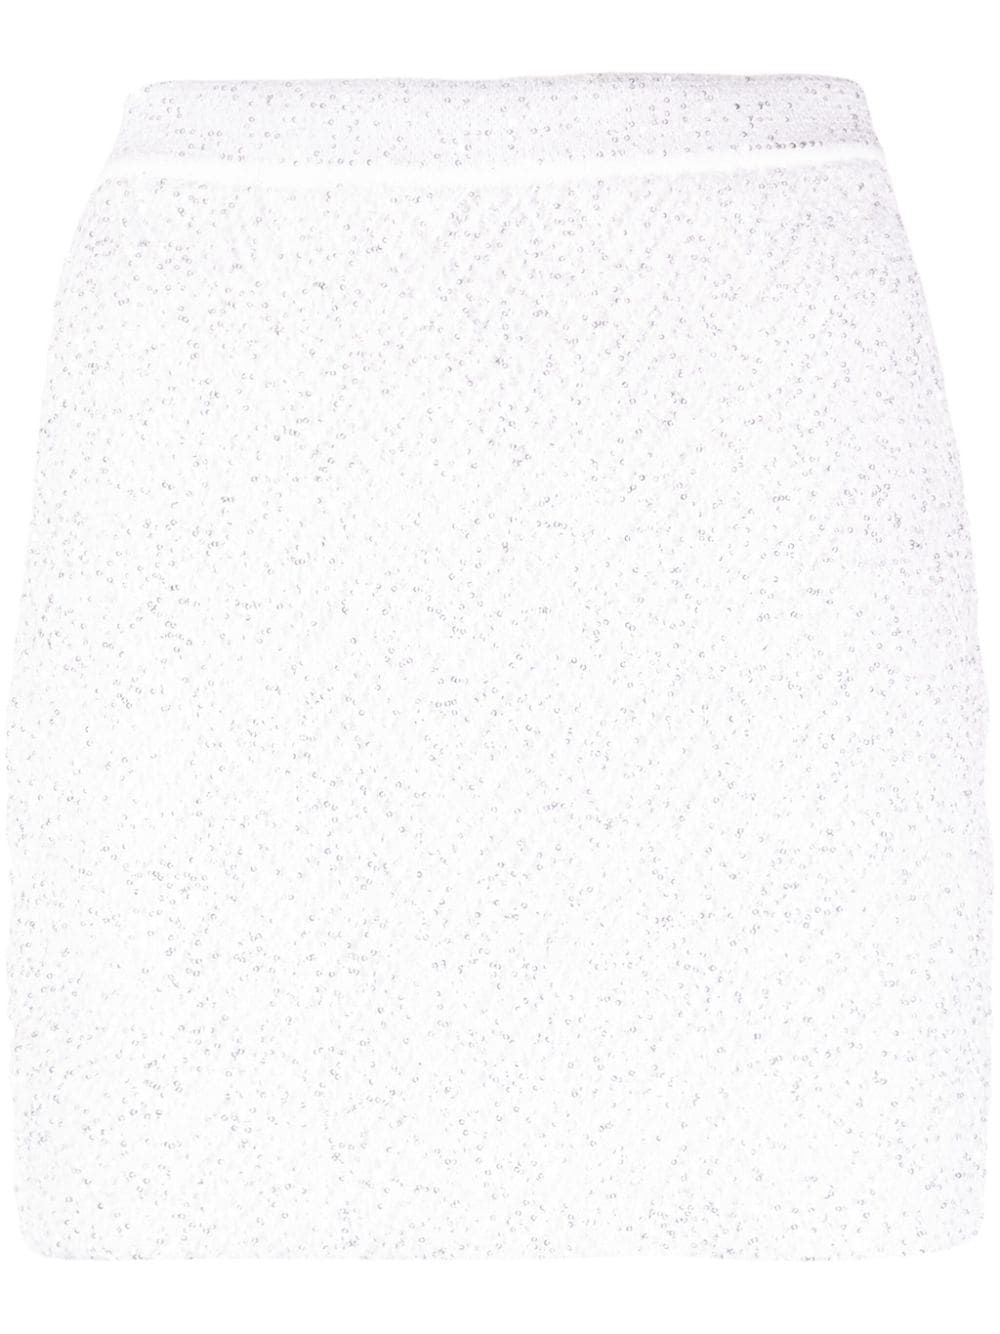 白のシーケンス装飾ツイードミニスカート